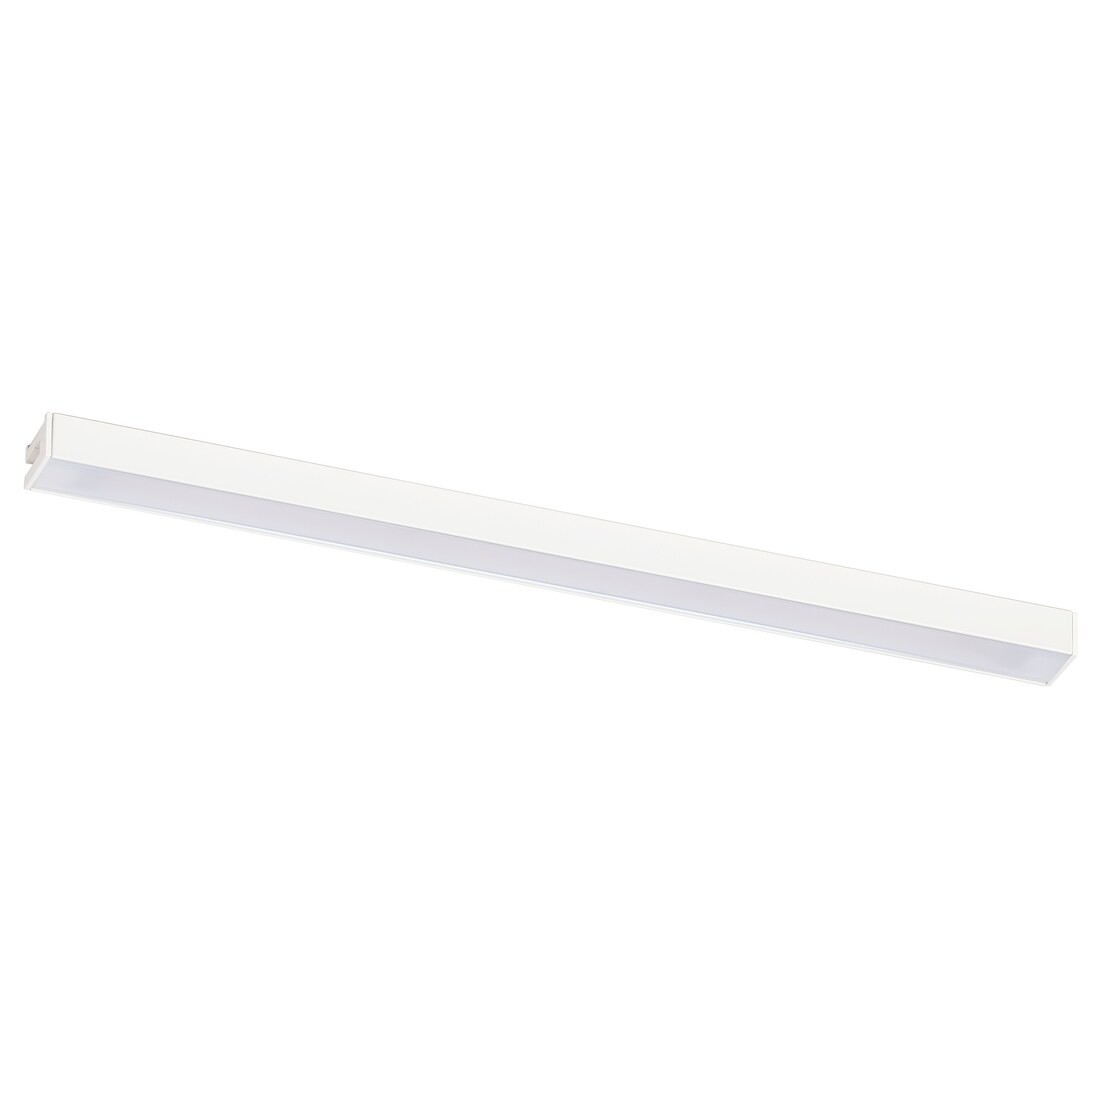 IKEA MITTLED МИТЛЕД Светодиодная LED подсветка столешницы, затемняемый белый, 30 см 90528498 905.284.98